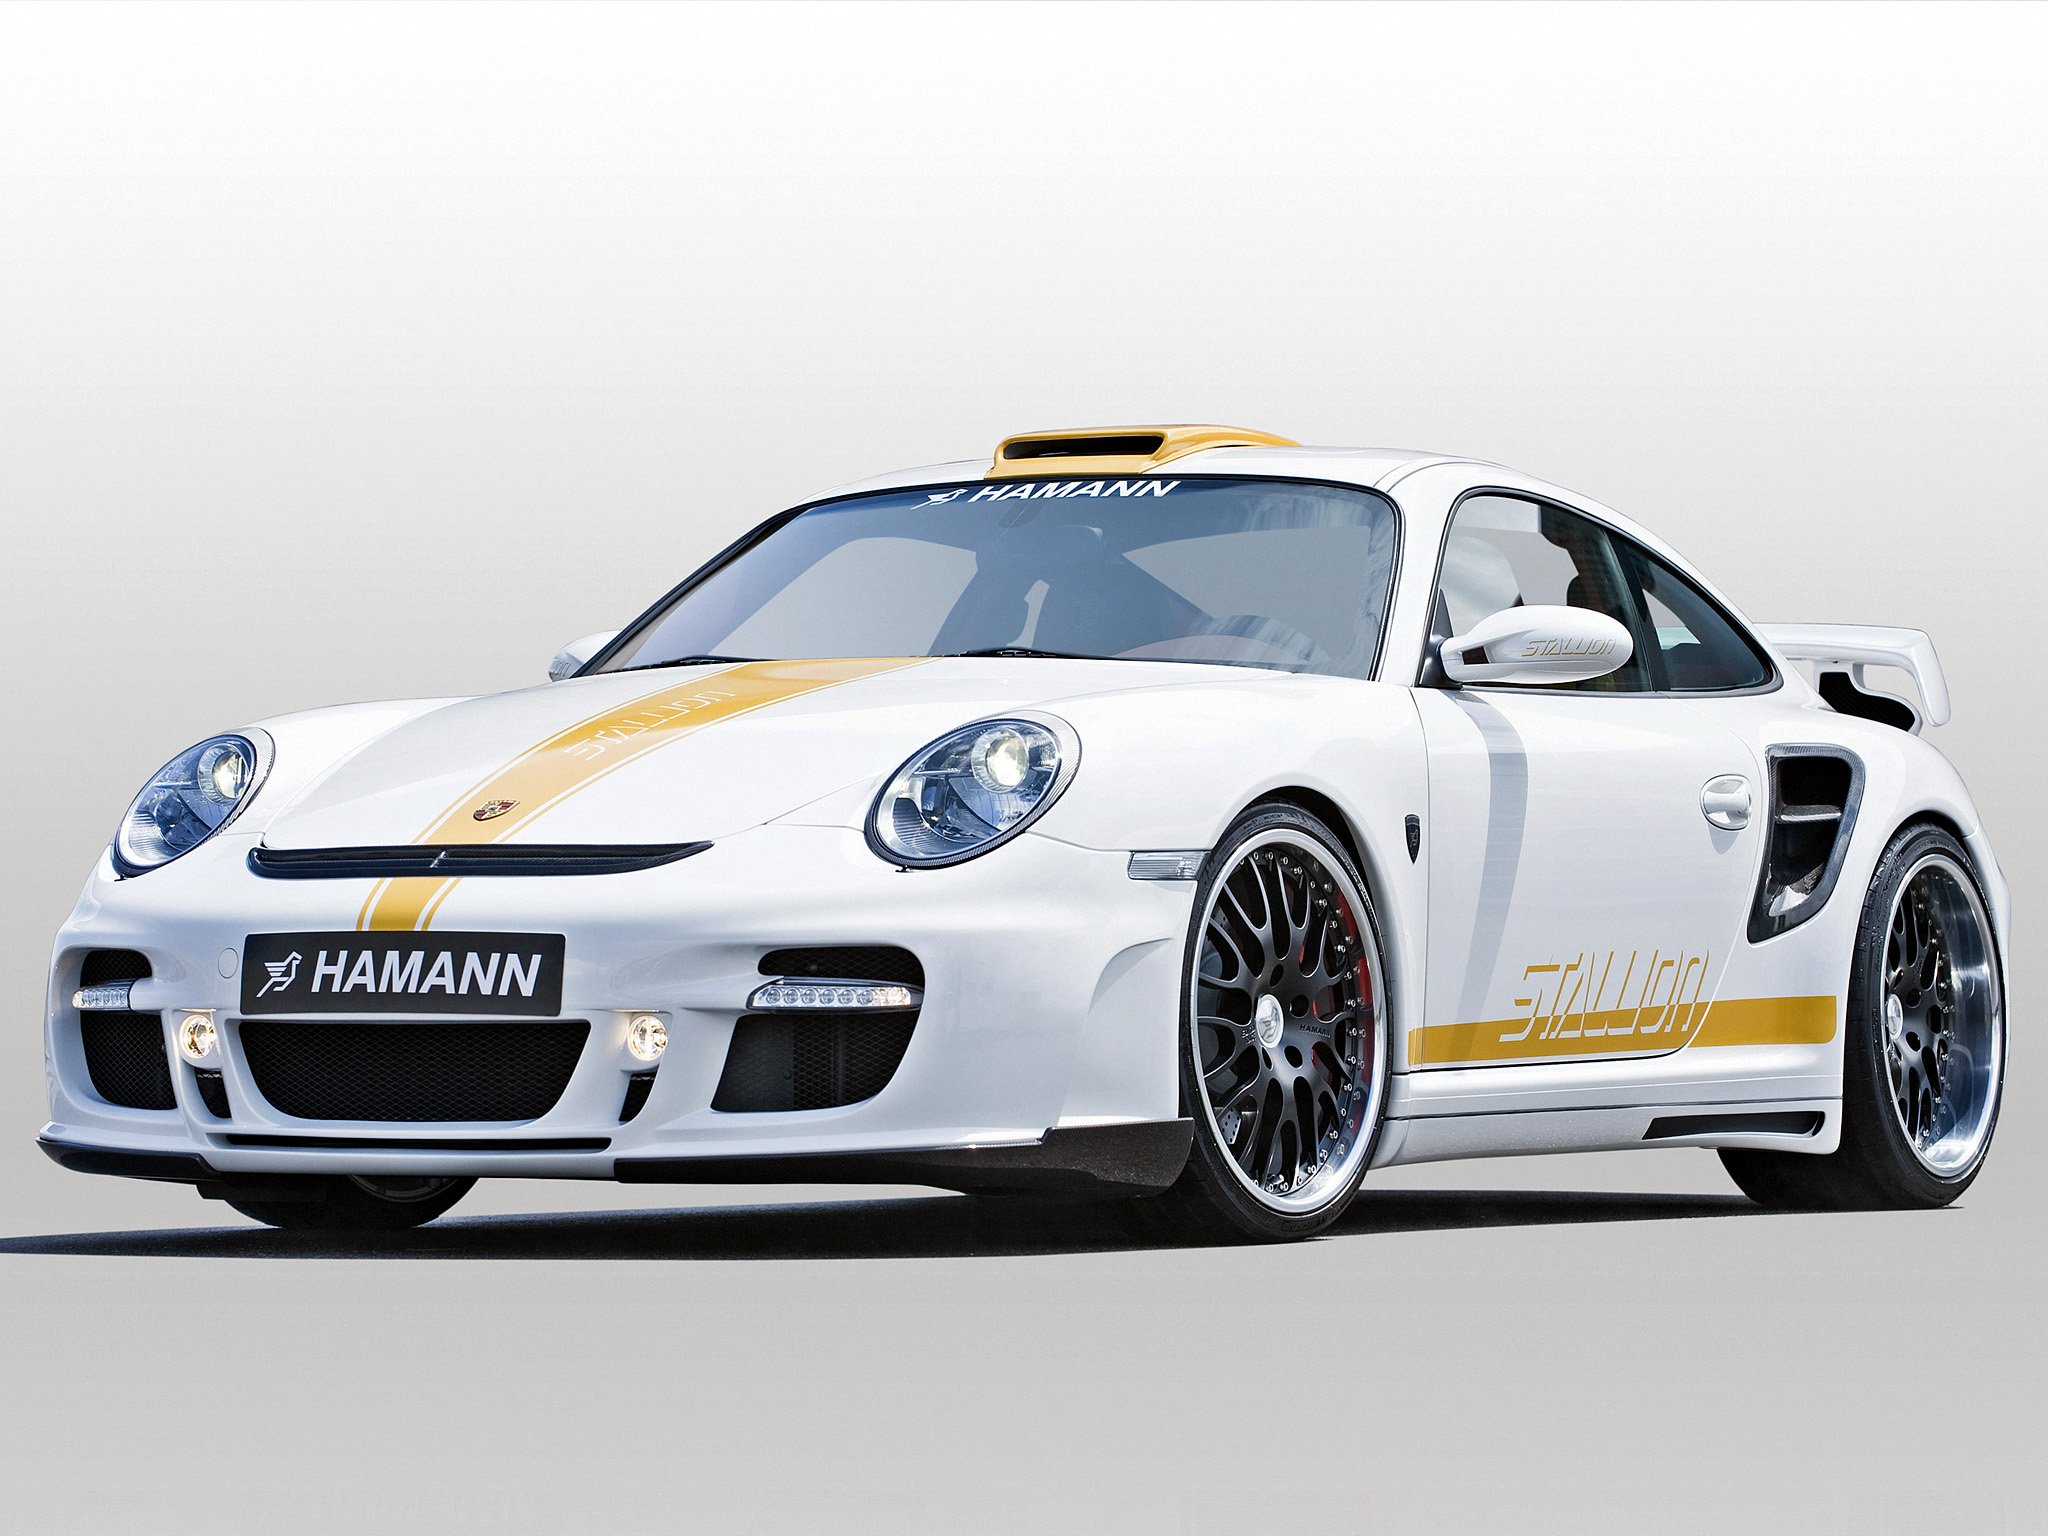 hamann, Porsche, Stallion, 911,  997 , Cars, Modified, 2008 Wallpaper